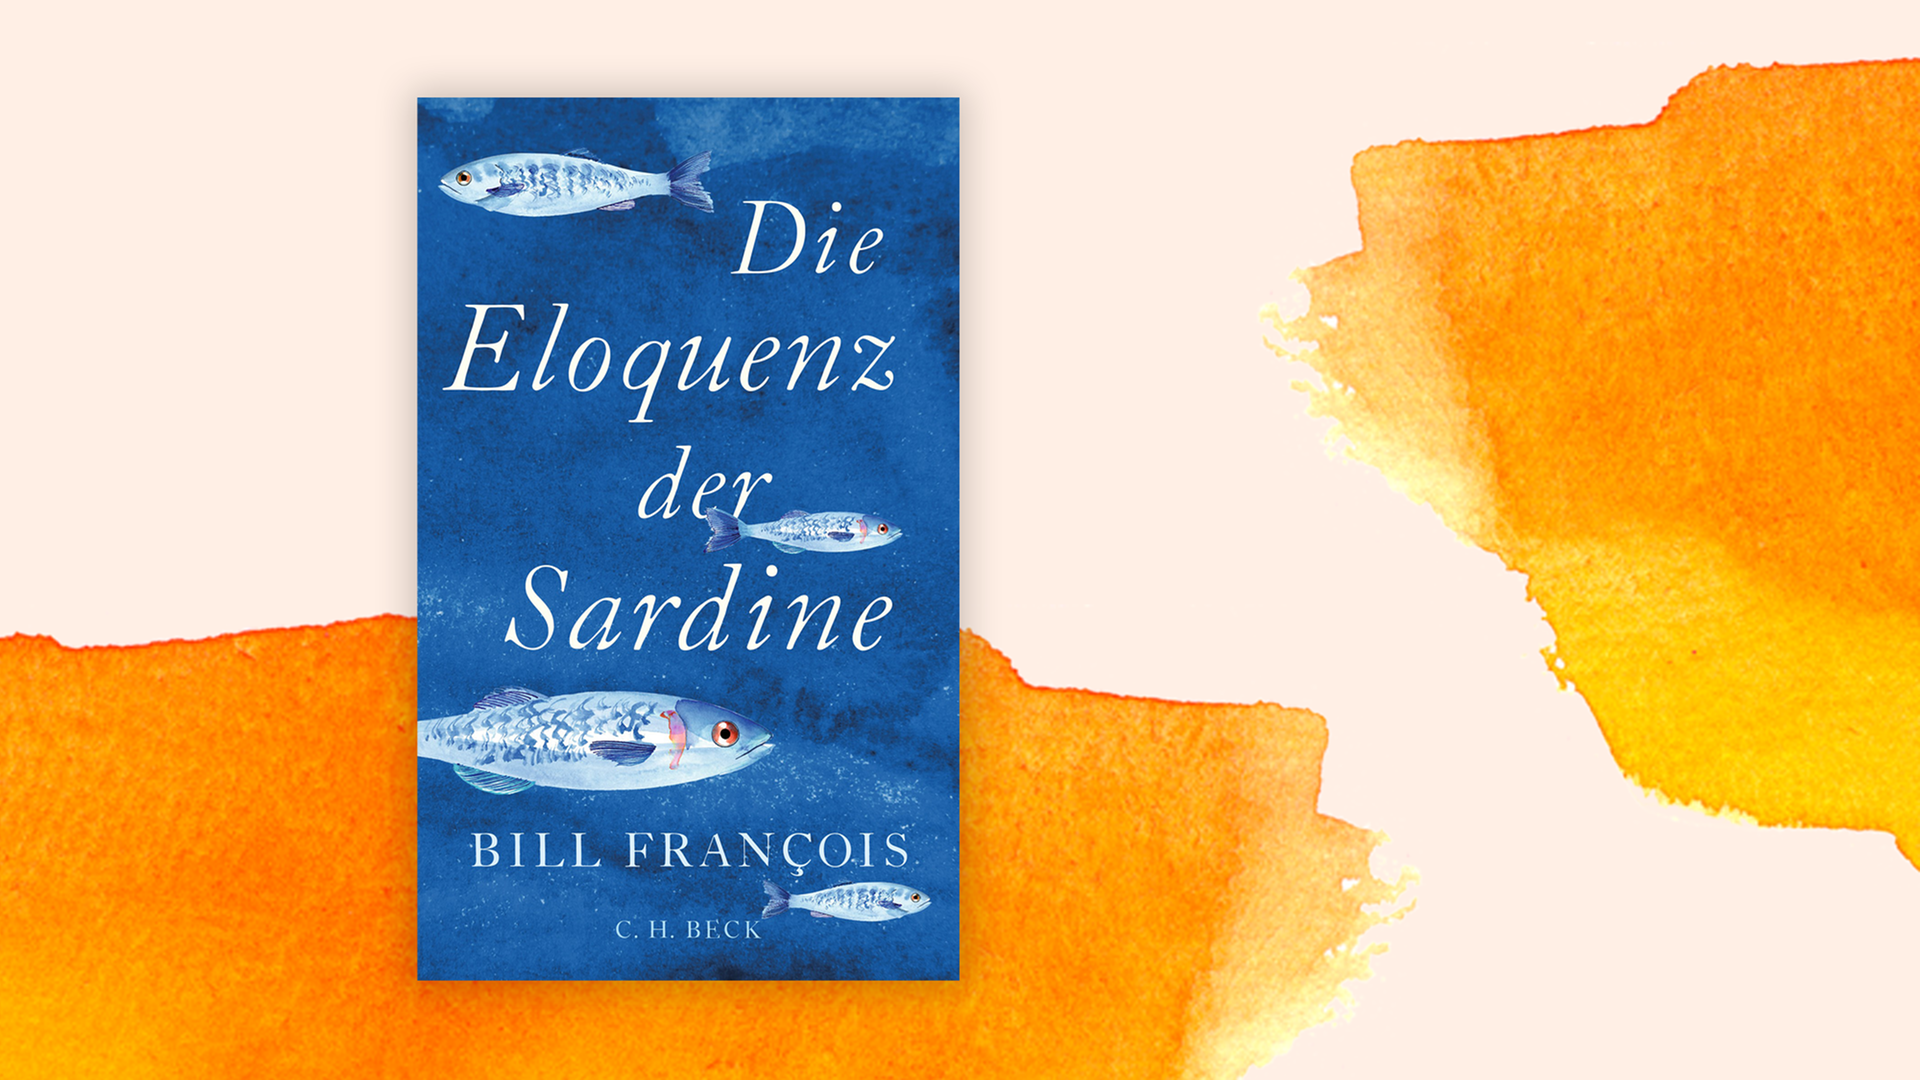 Zu sehen ist das Coer des Buchs "Die Eloquenz der Sardine" von Bill François.